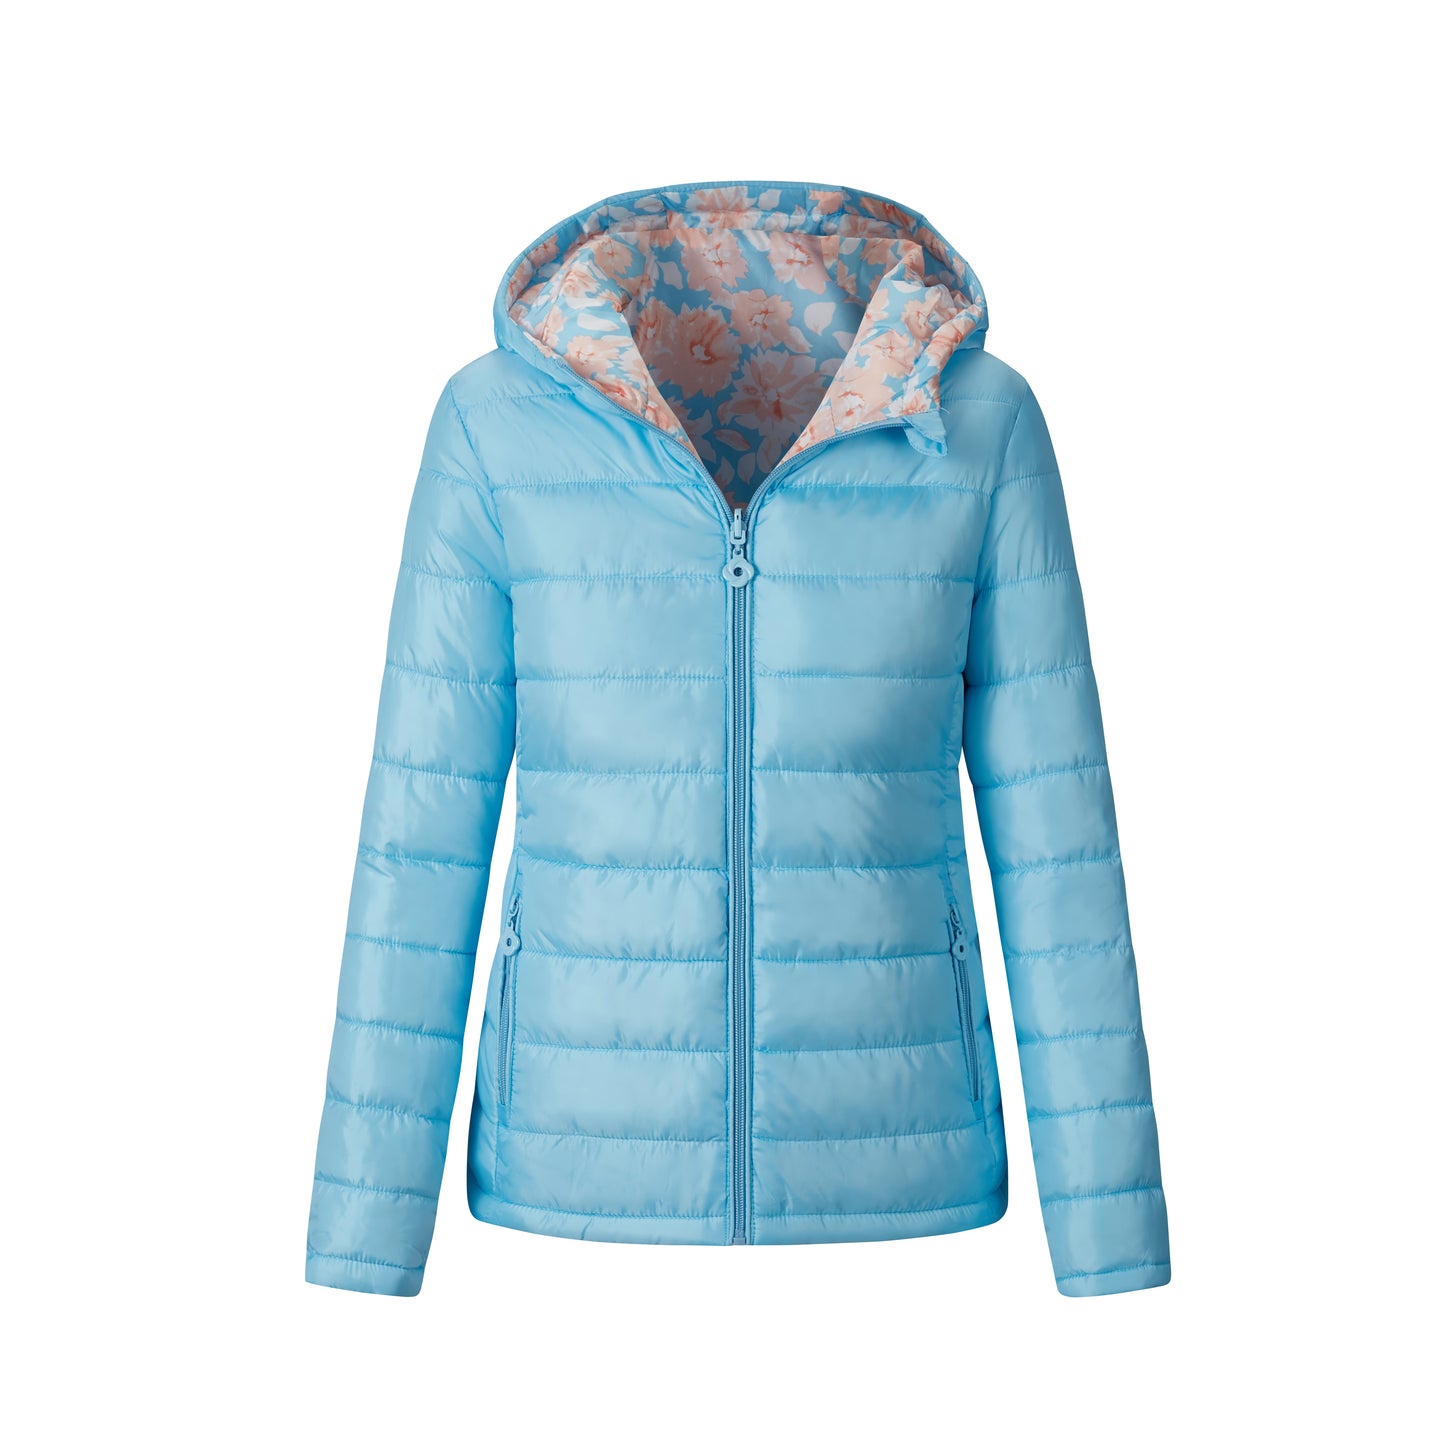 Reversible Ladies Jacket: Winter Fashion Coat with Waterproof Hood